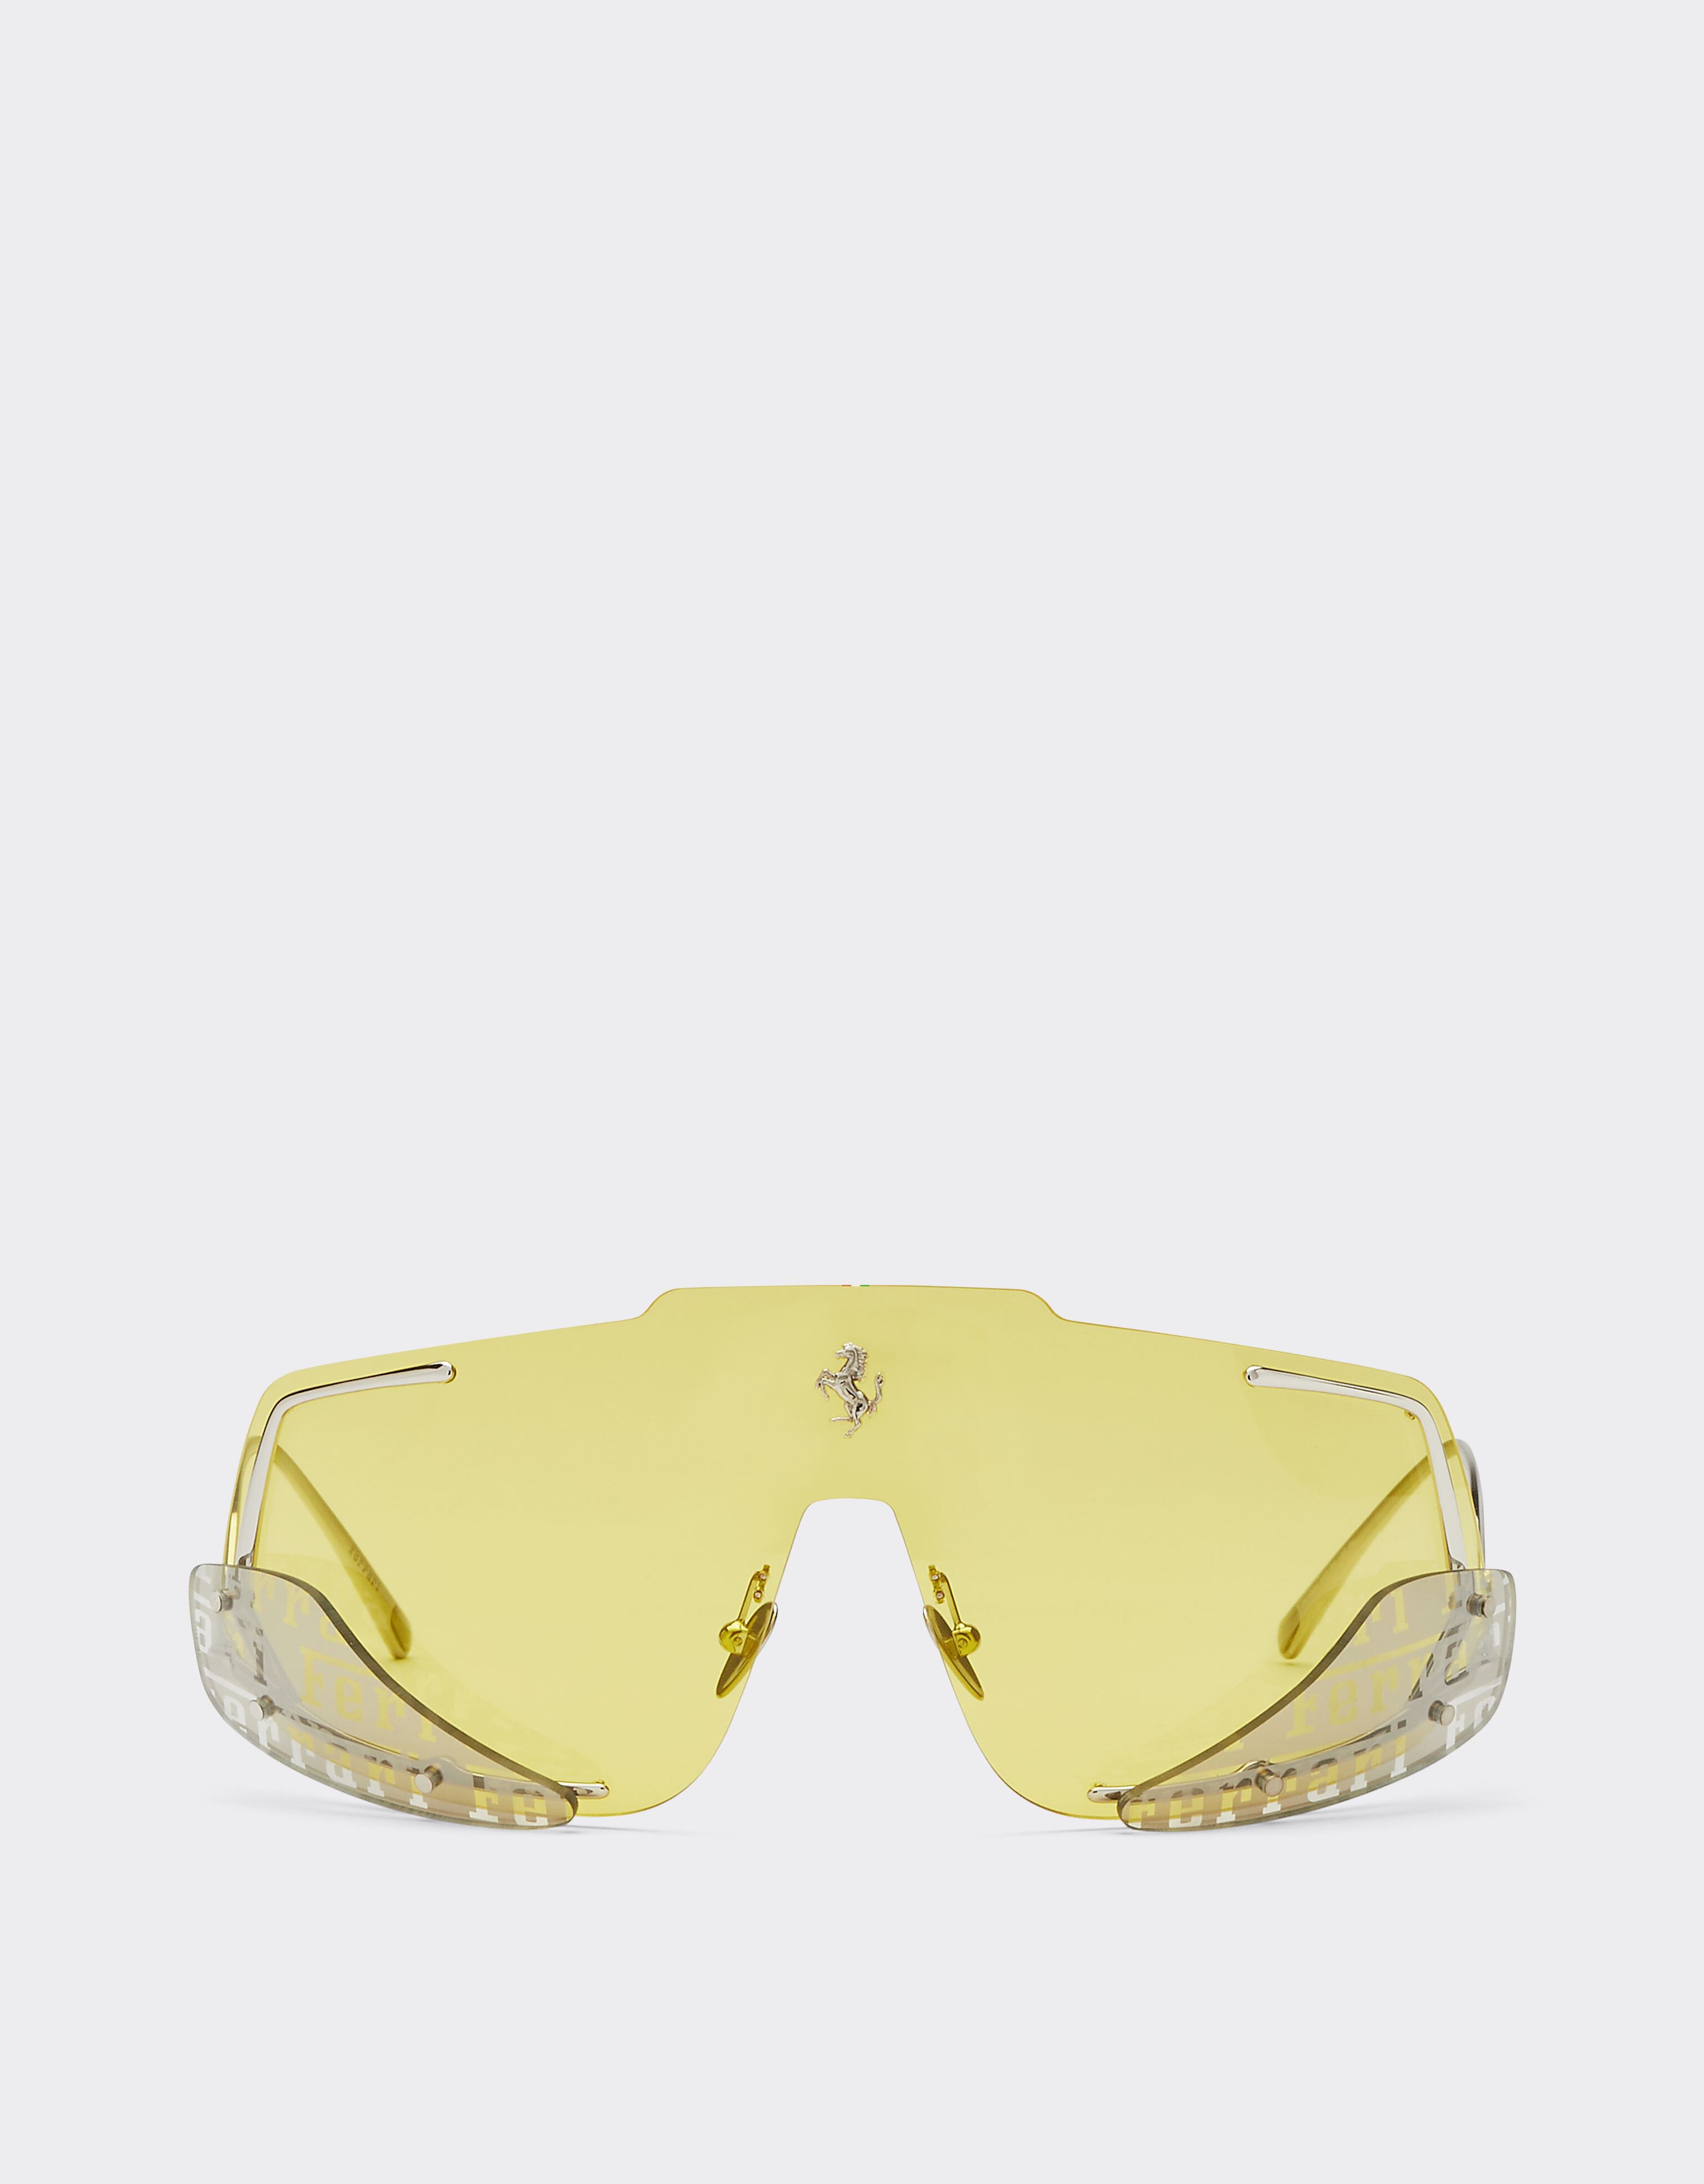 Ferrari Ferrari-Sonnenbrille mit gelben Gläsern Schwarz F1201f